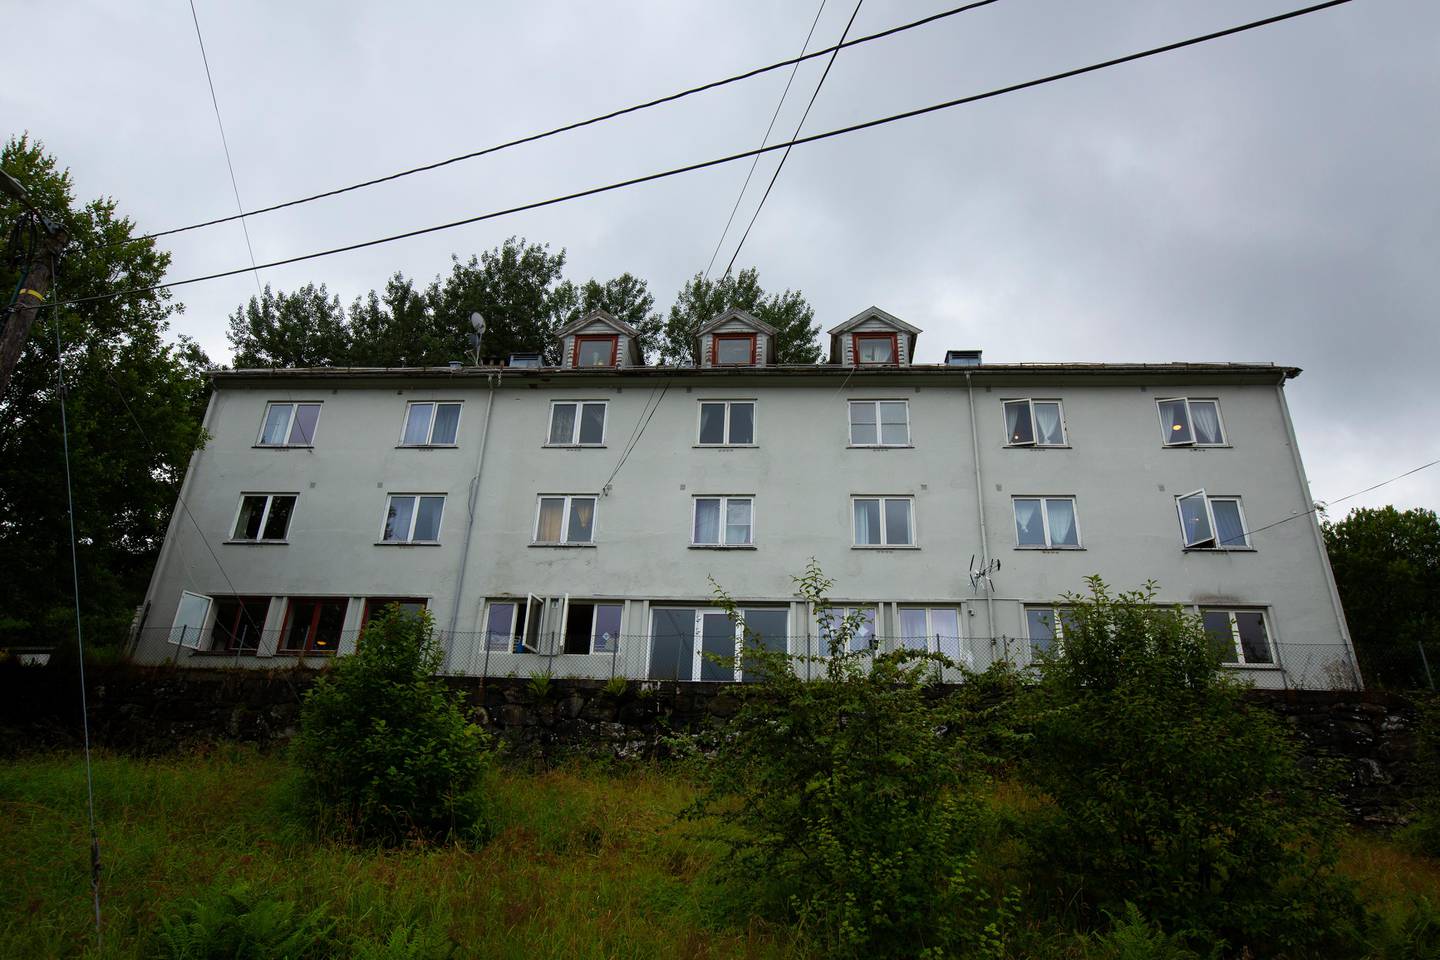 Arna mottakssenter er Norges eldste asylmottak.